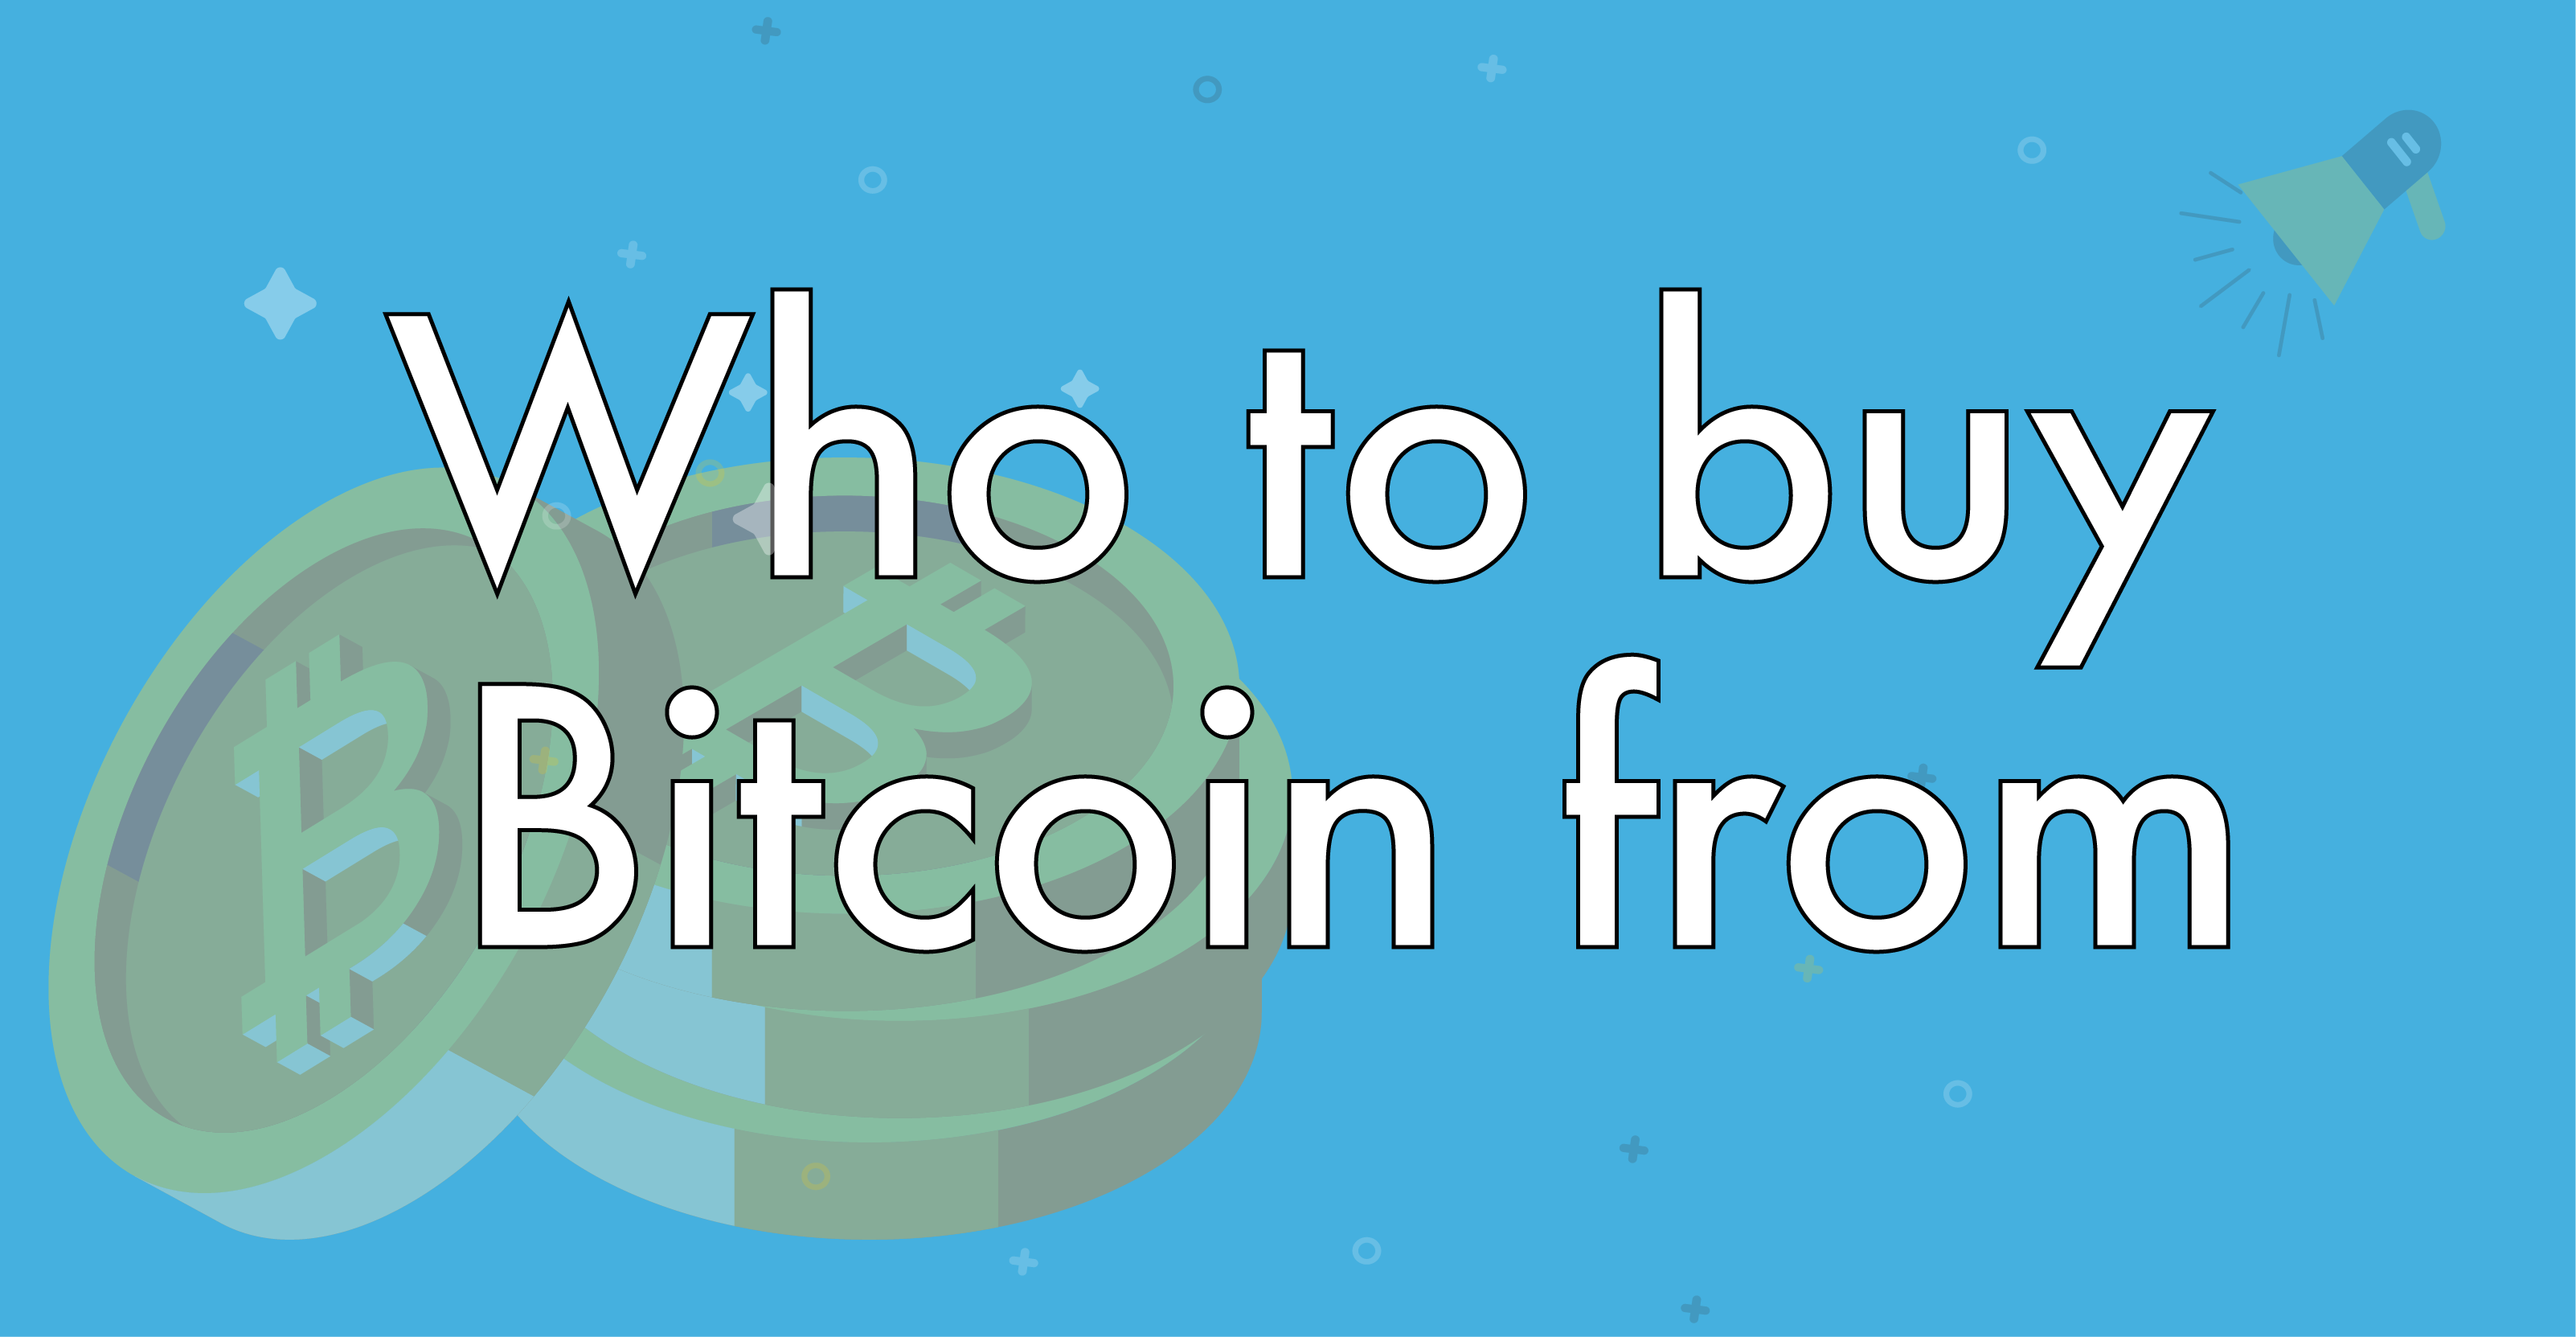 Who do I buy Bitcoin from